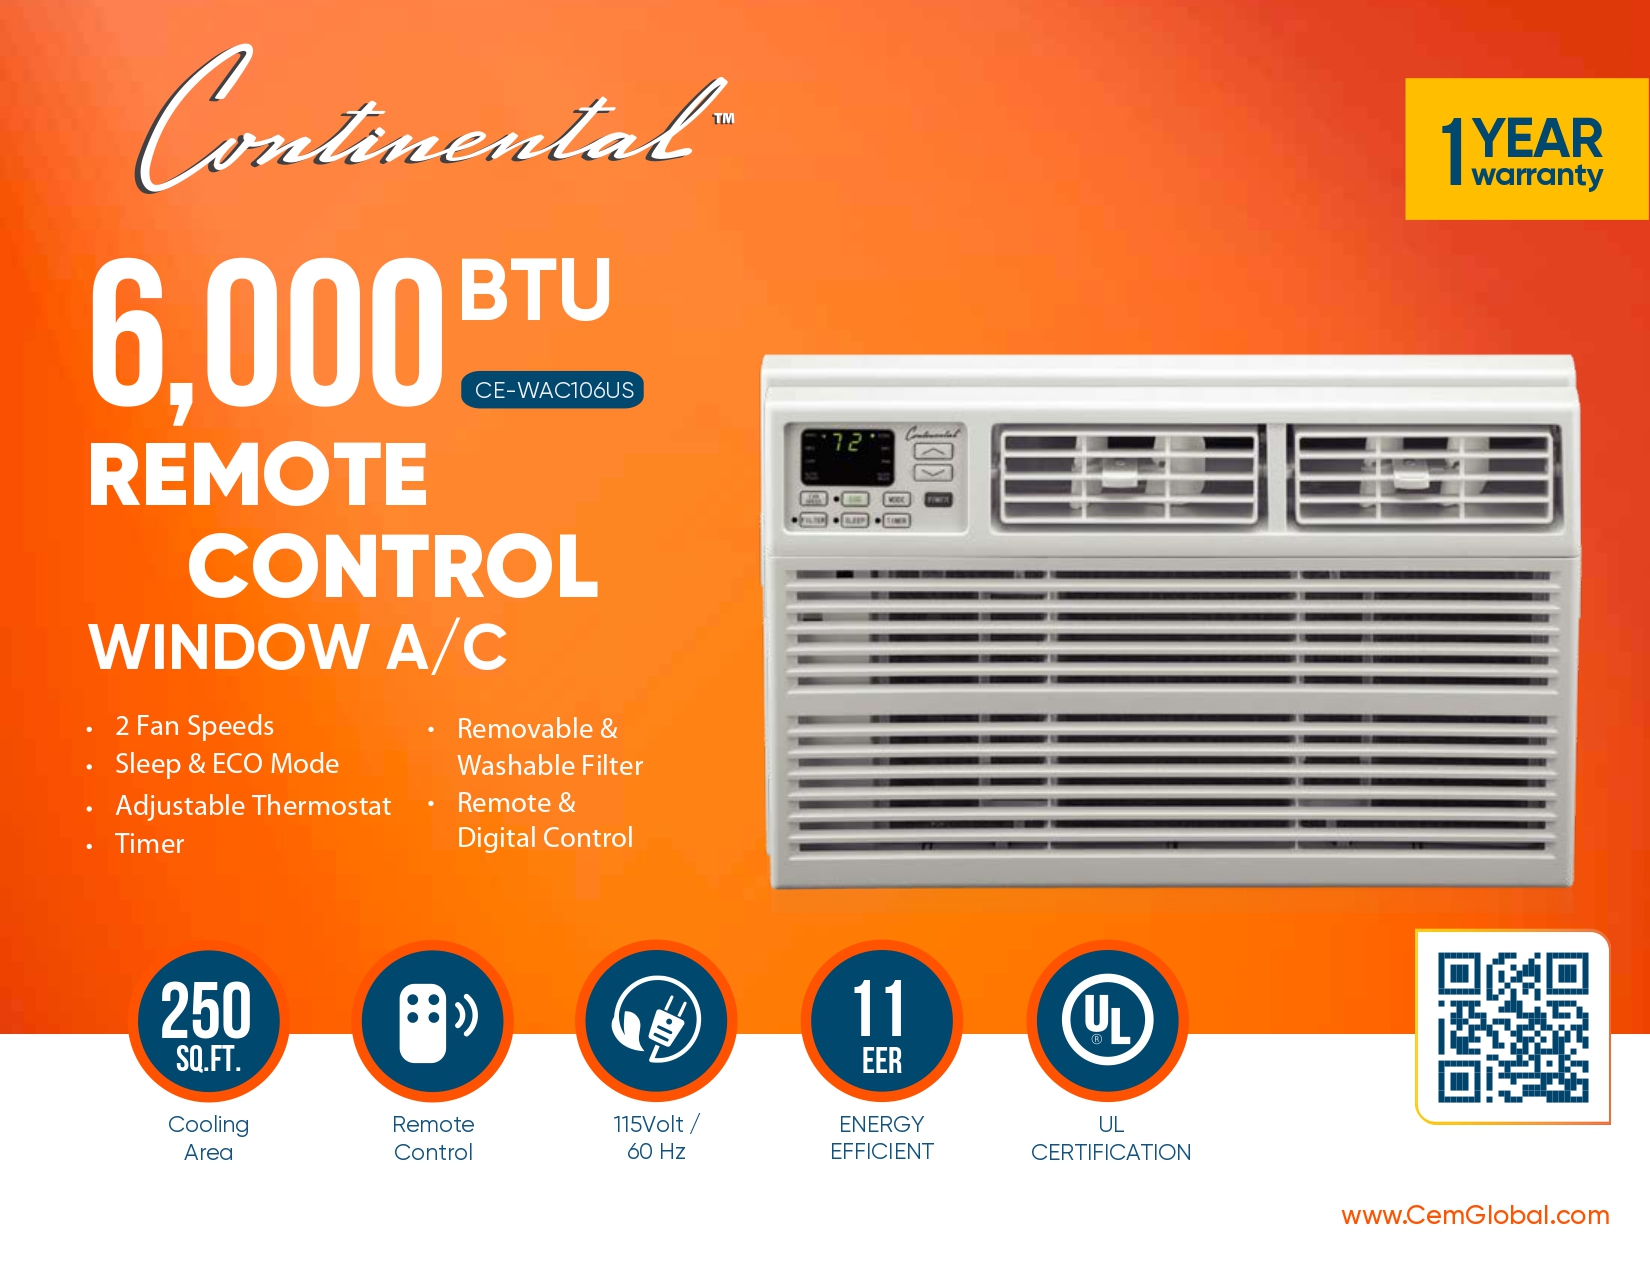 6,000 BTU REMOTE CONTROL WINDOW A/C